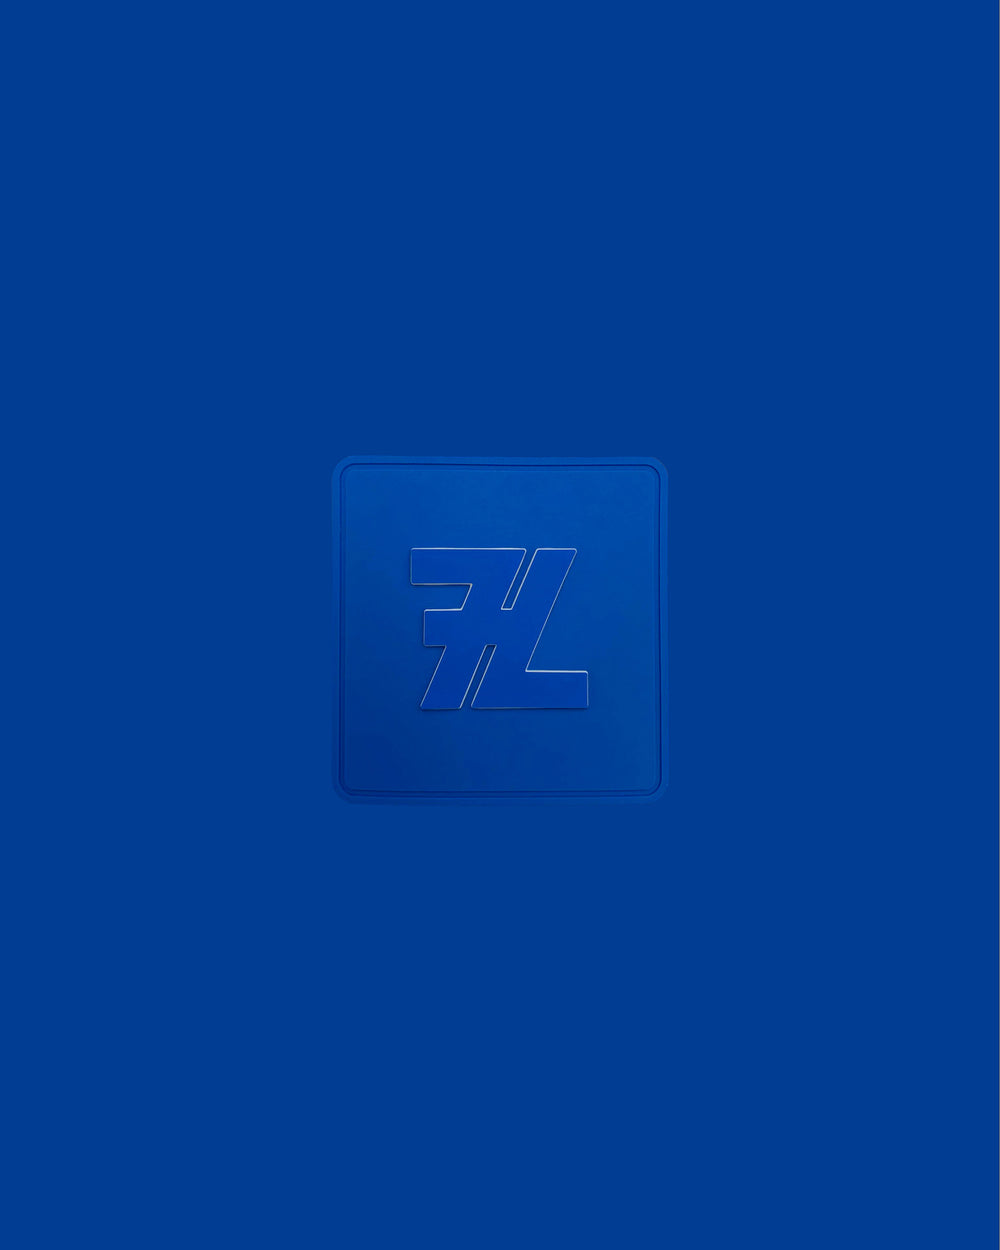 L0. 7L PATCH (BLUE)